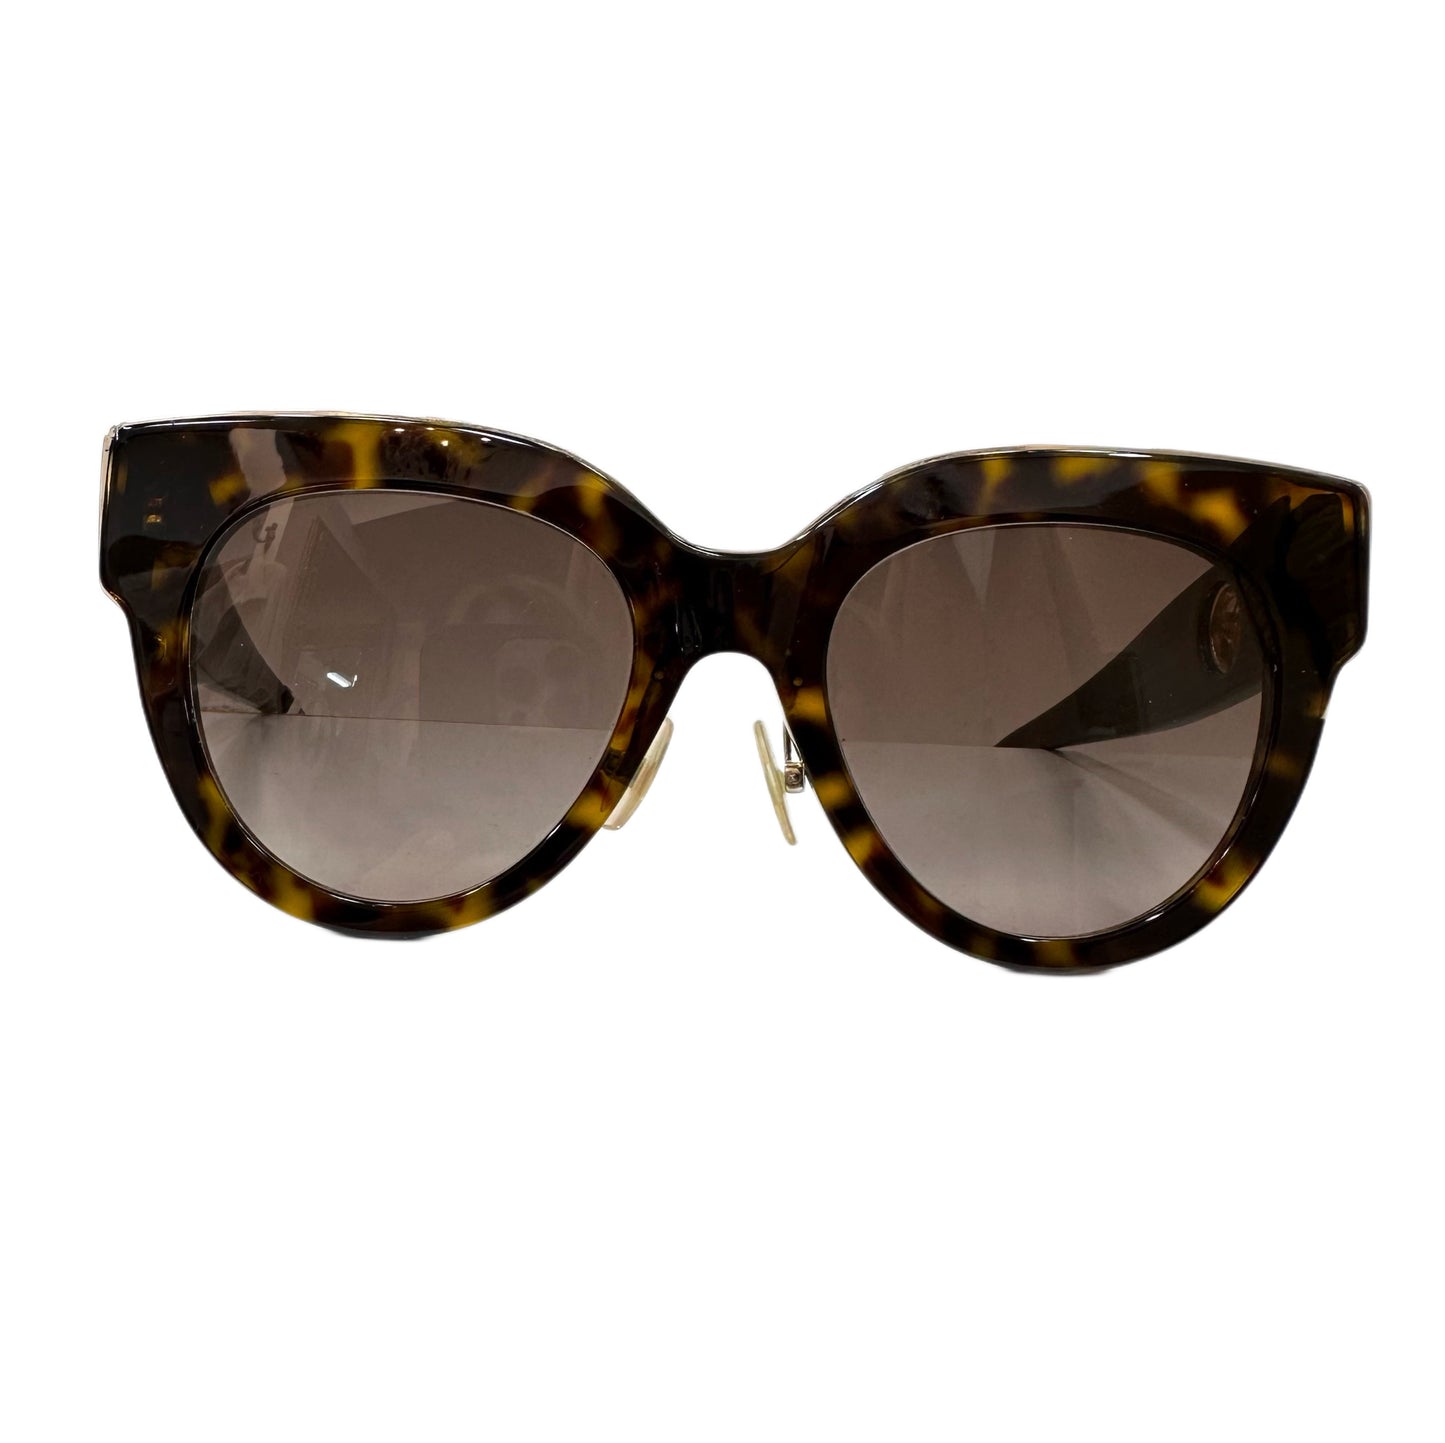 FENDI Tortoiseshell Sunglasses